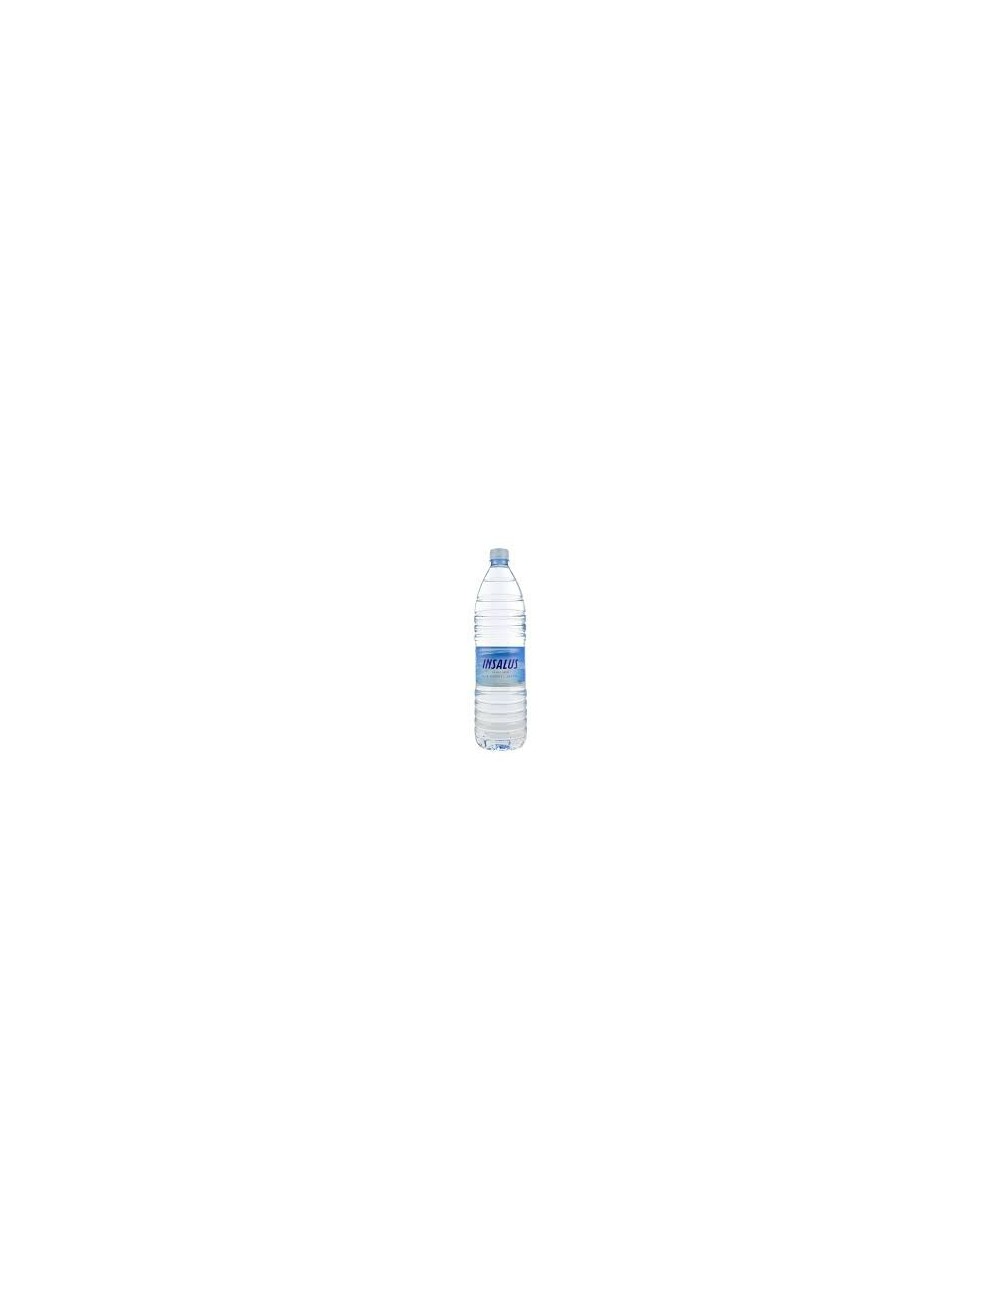 Agua Insalus 1Caja 12UDS de 1,5L